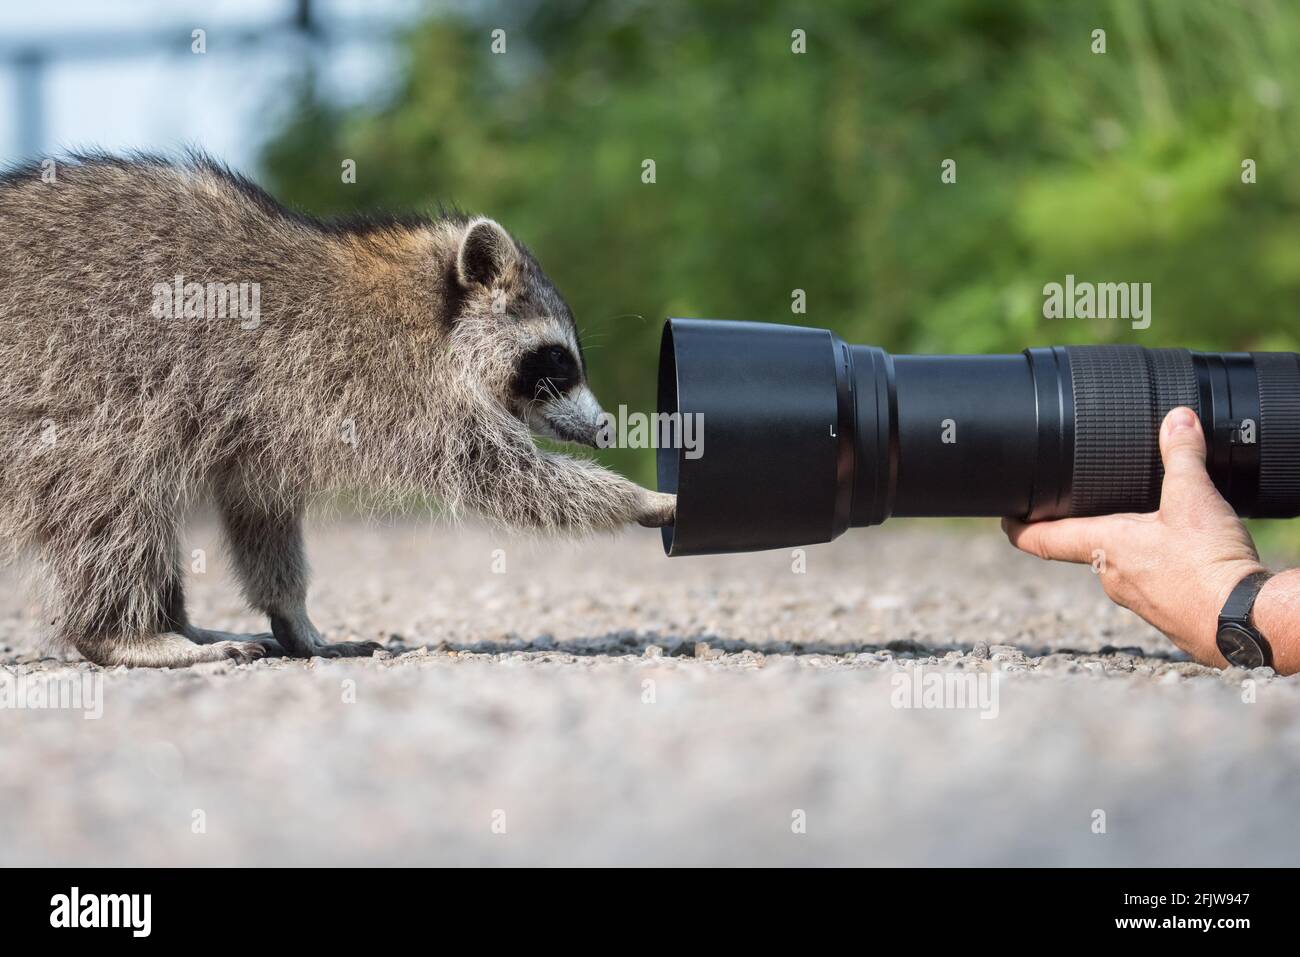 Un mapache examina el teleobjetivo de un fotógrafo en el área de conservación de Lynde Shores en Whitby, Ontario. Foto de stock